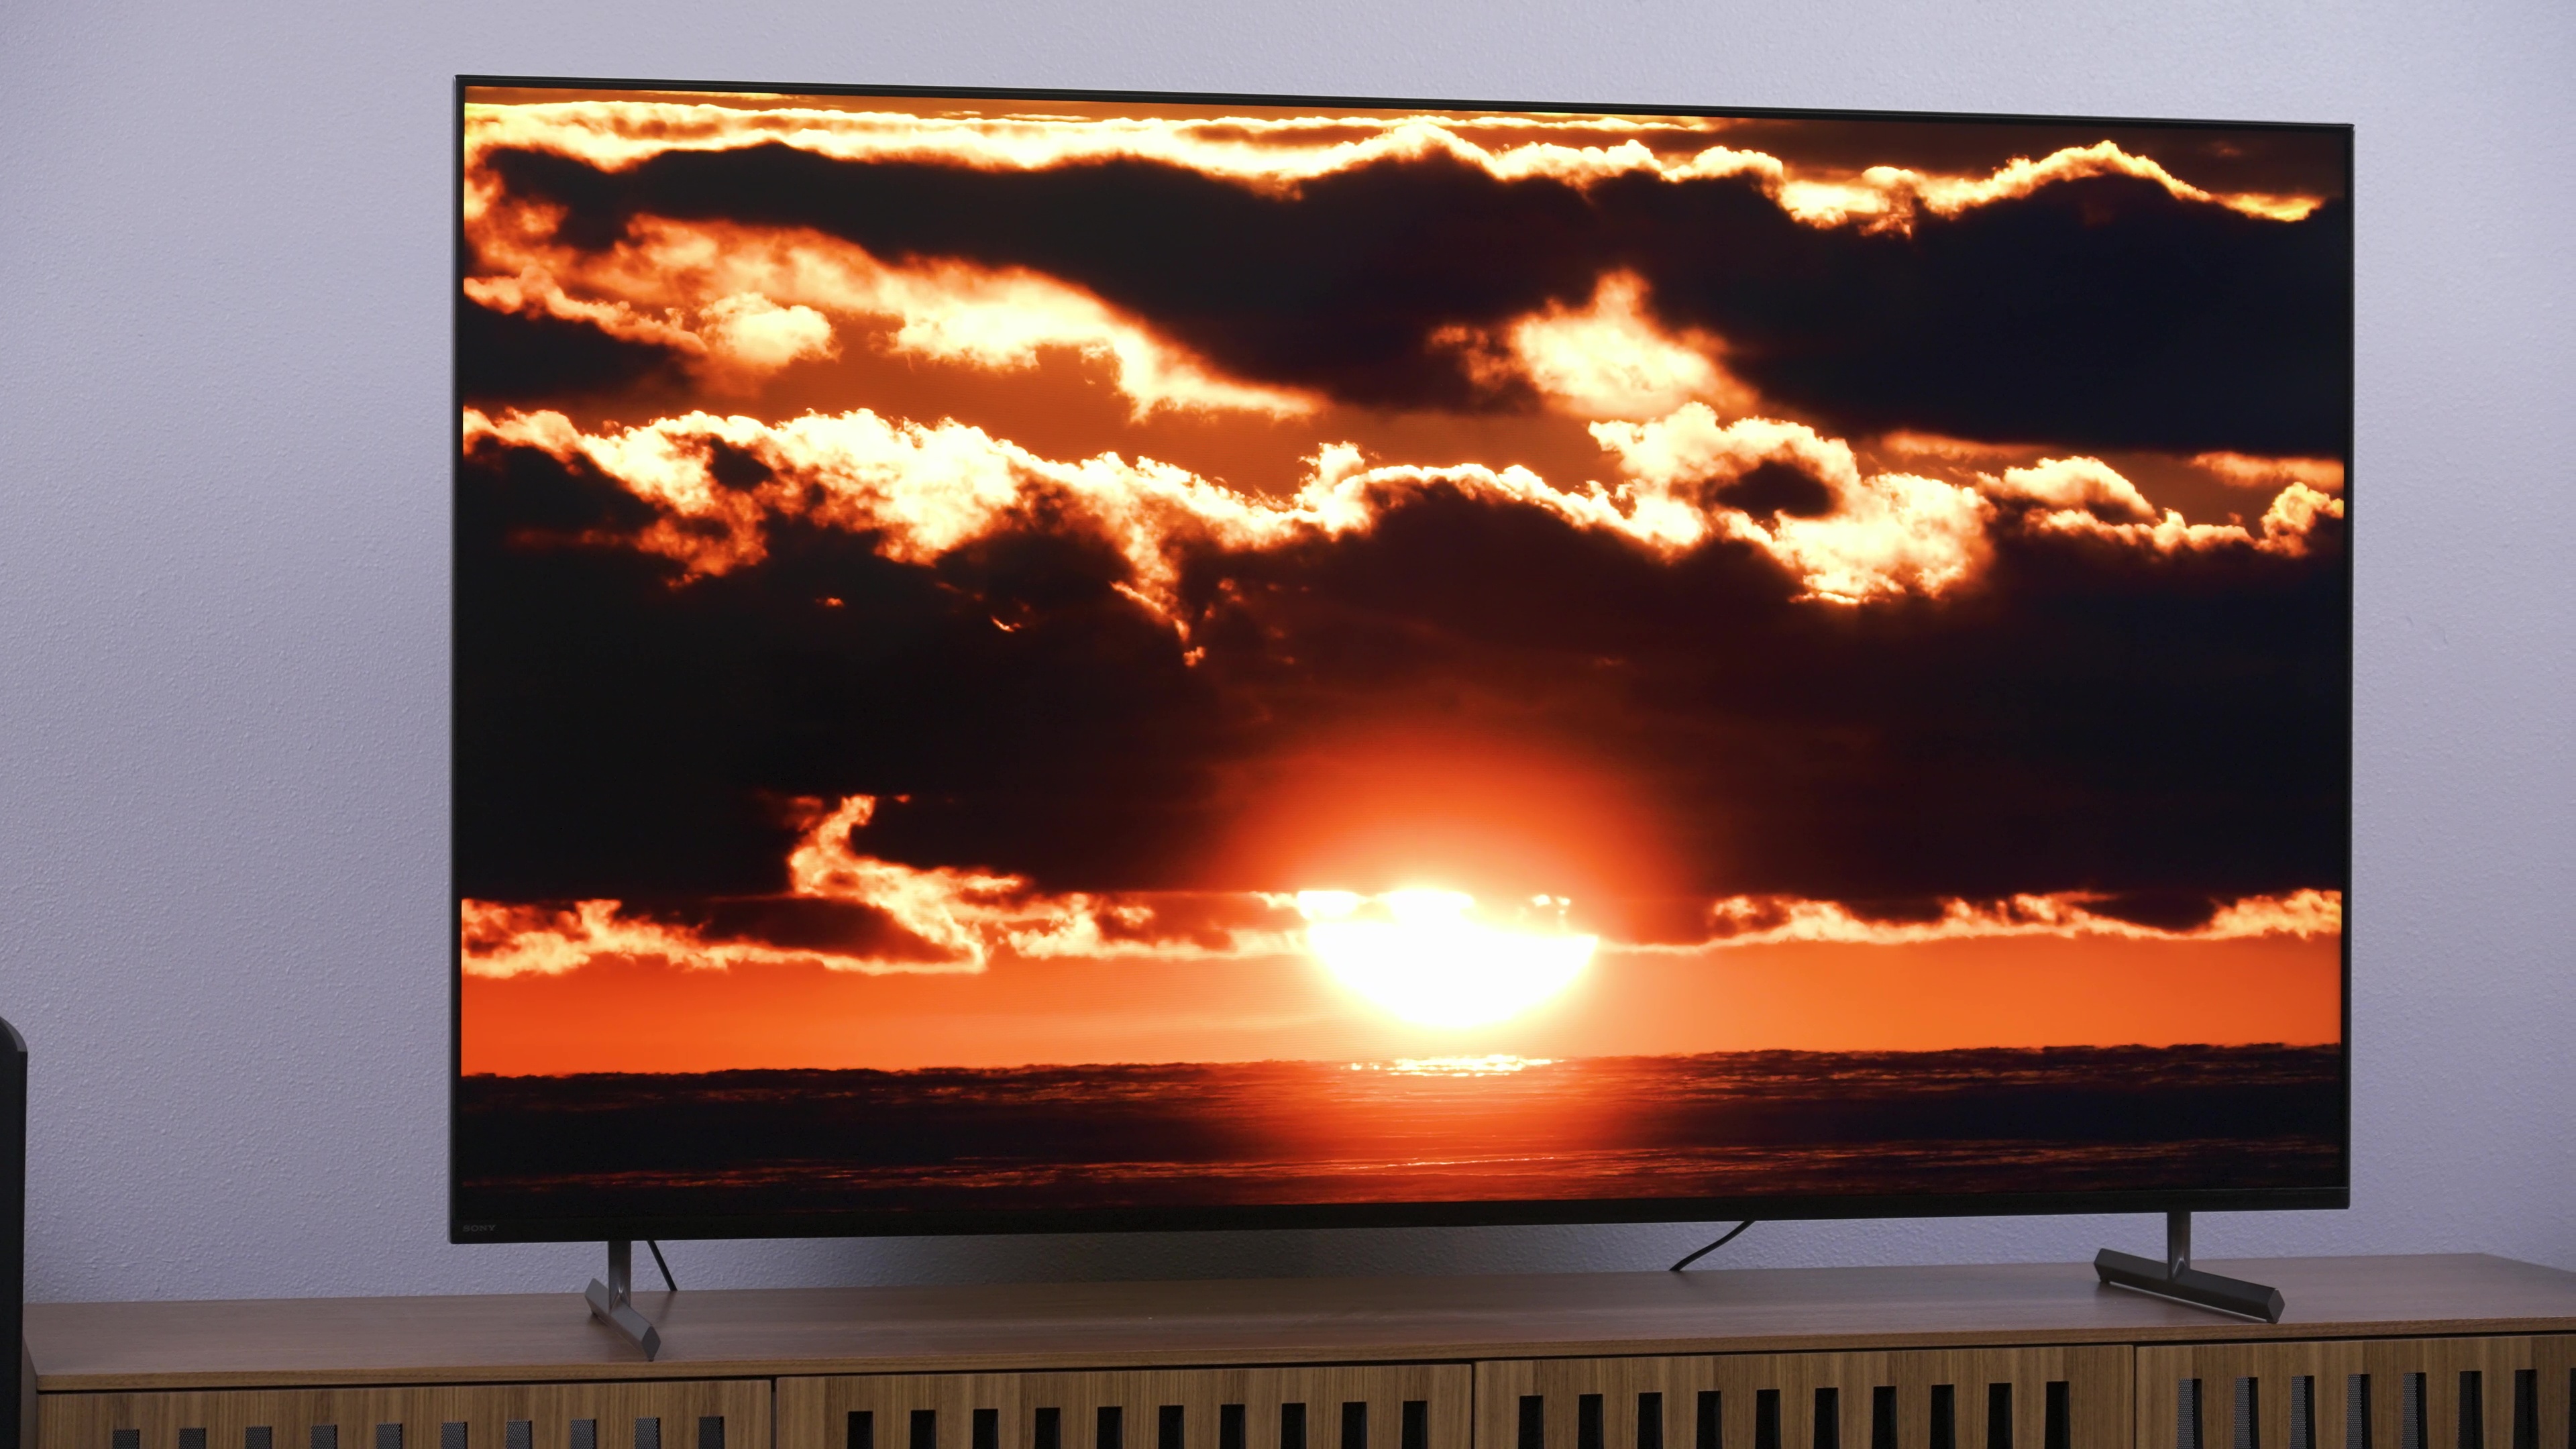 Sony X90L पर काले बादलों के बीच नारंगी सूर्यास्त प्रदर्शित किया गया।